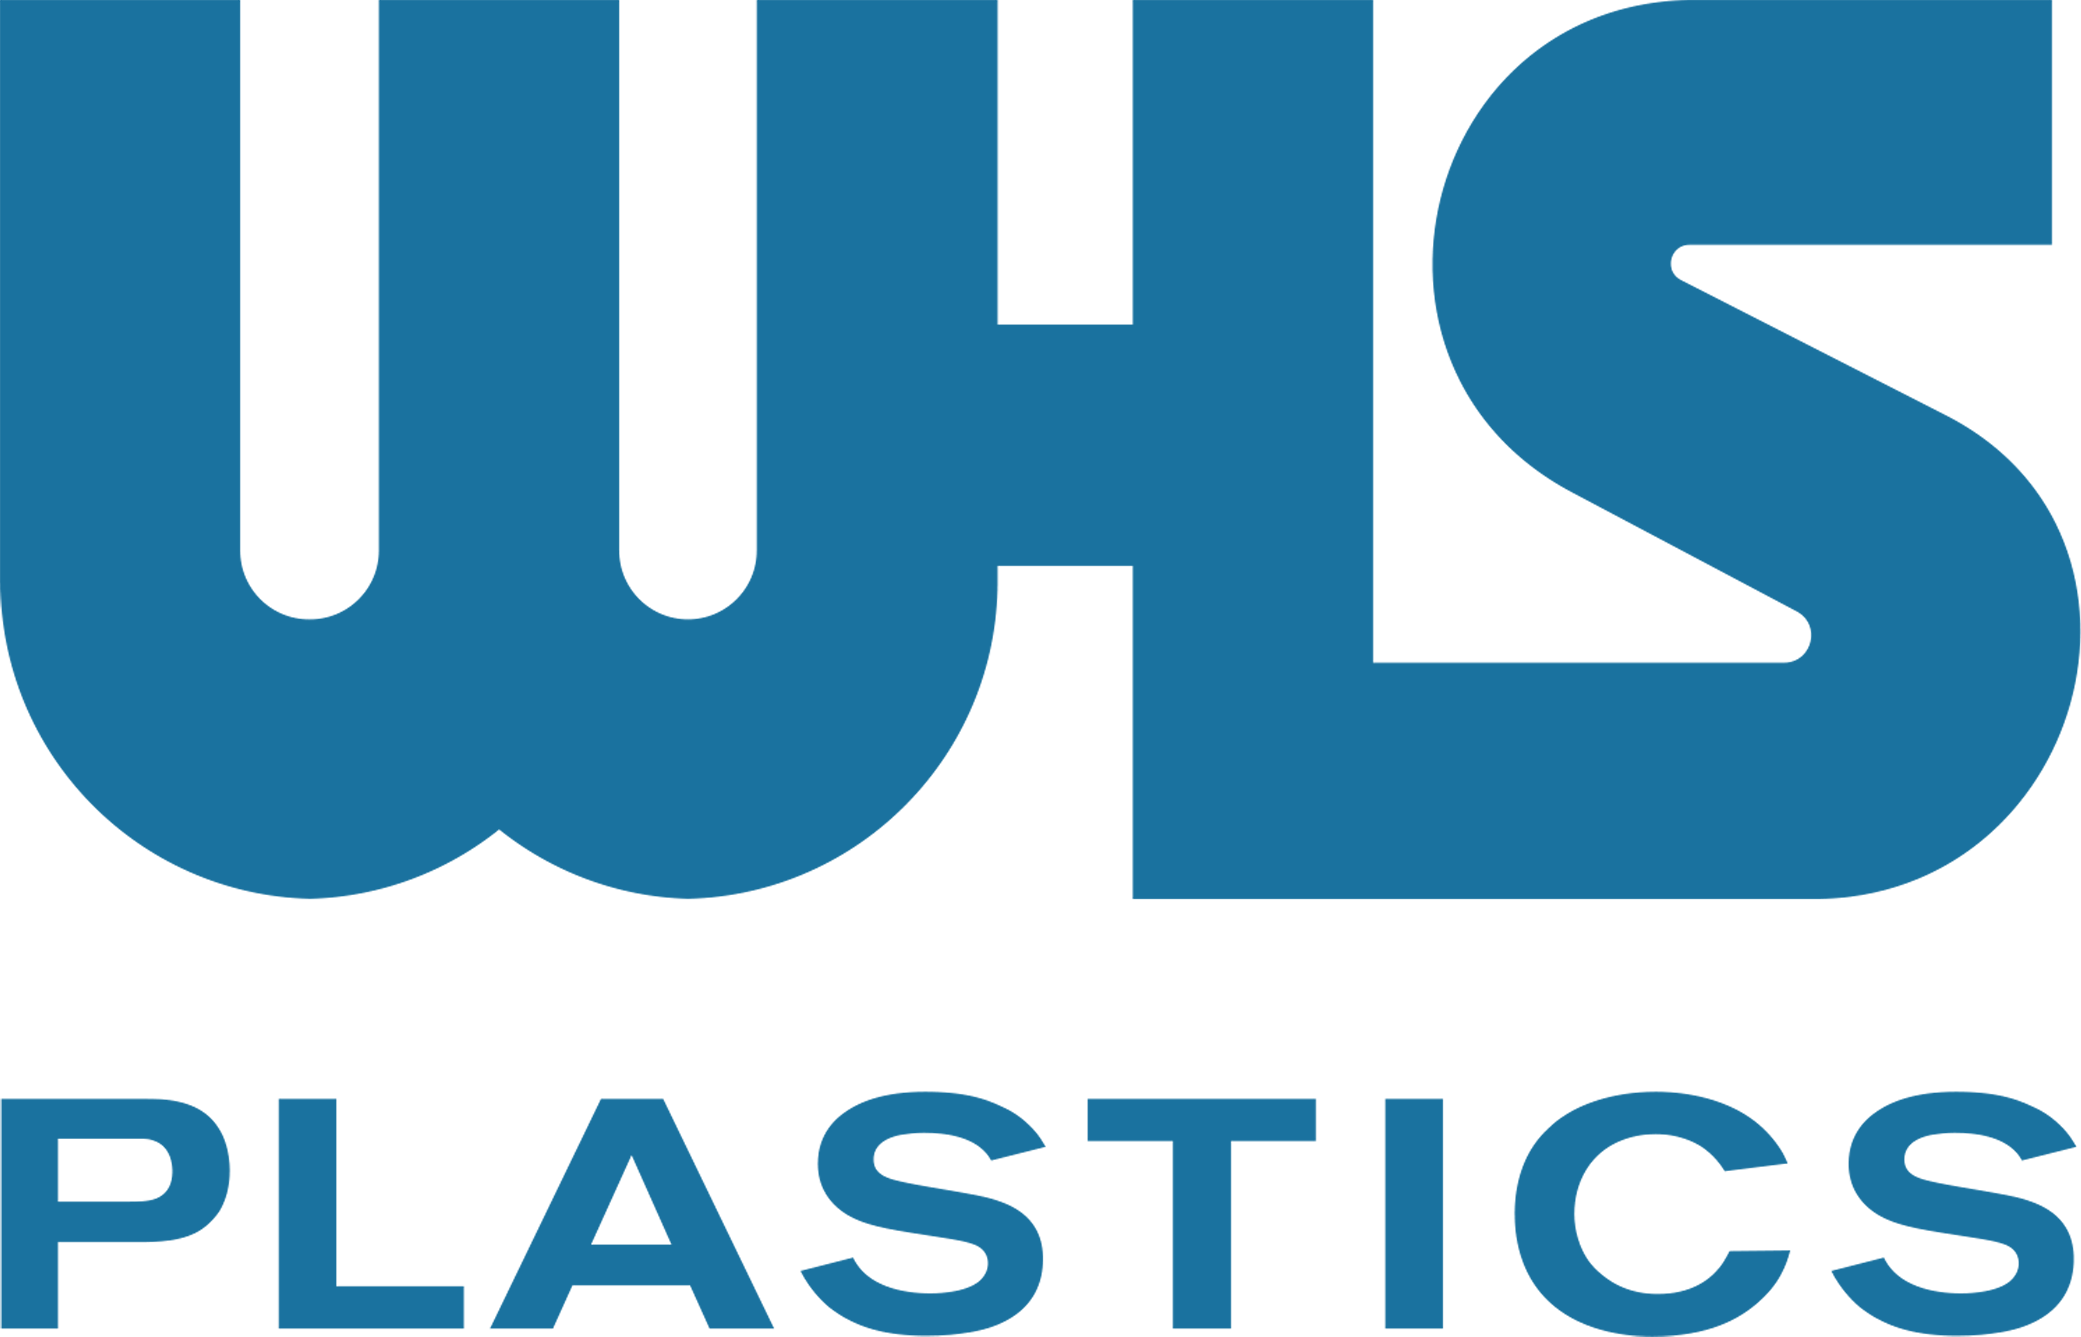 About us - WHS Plastics